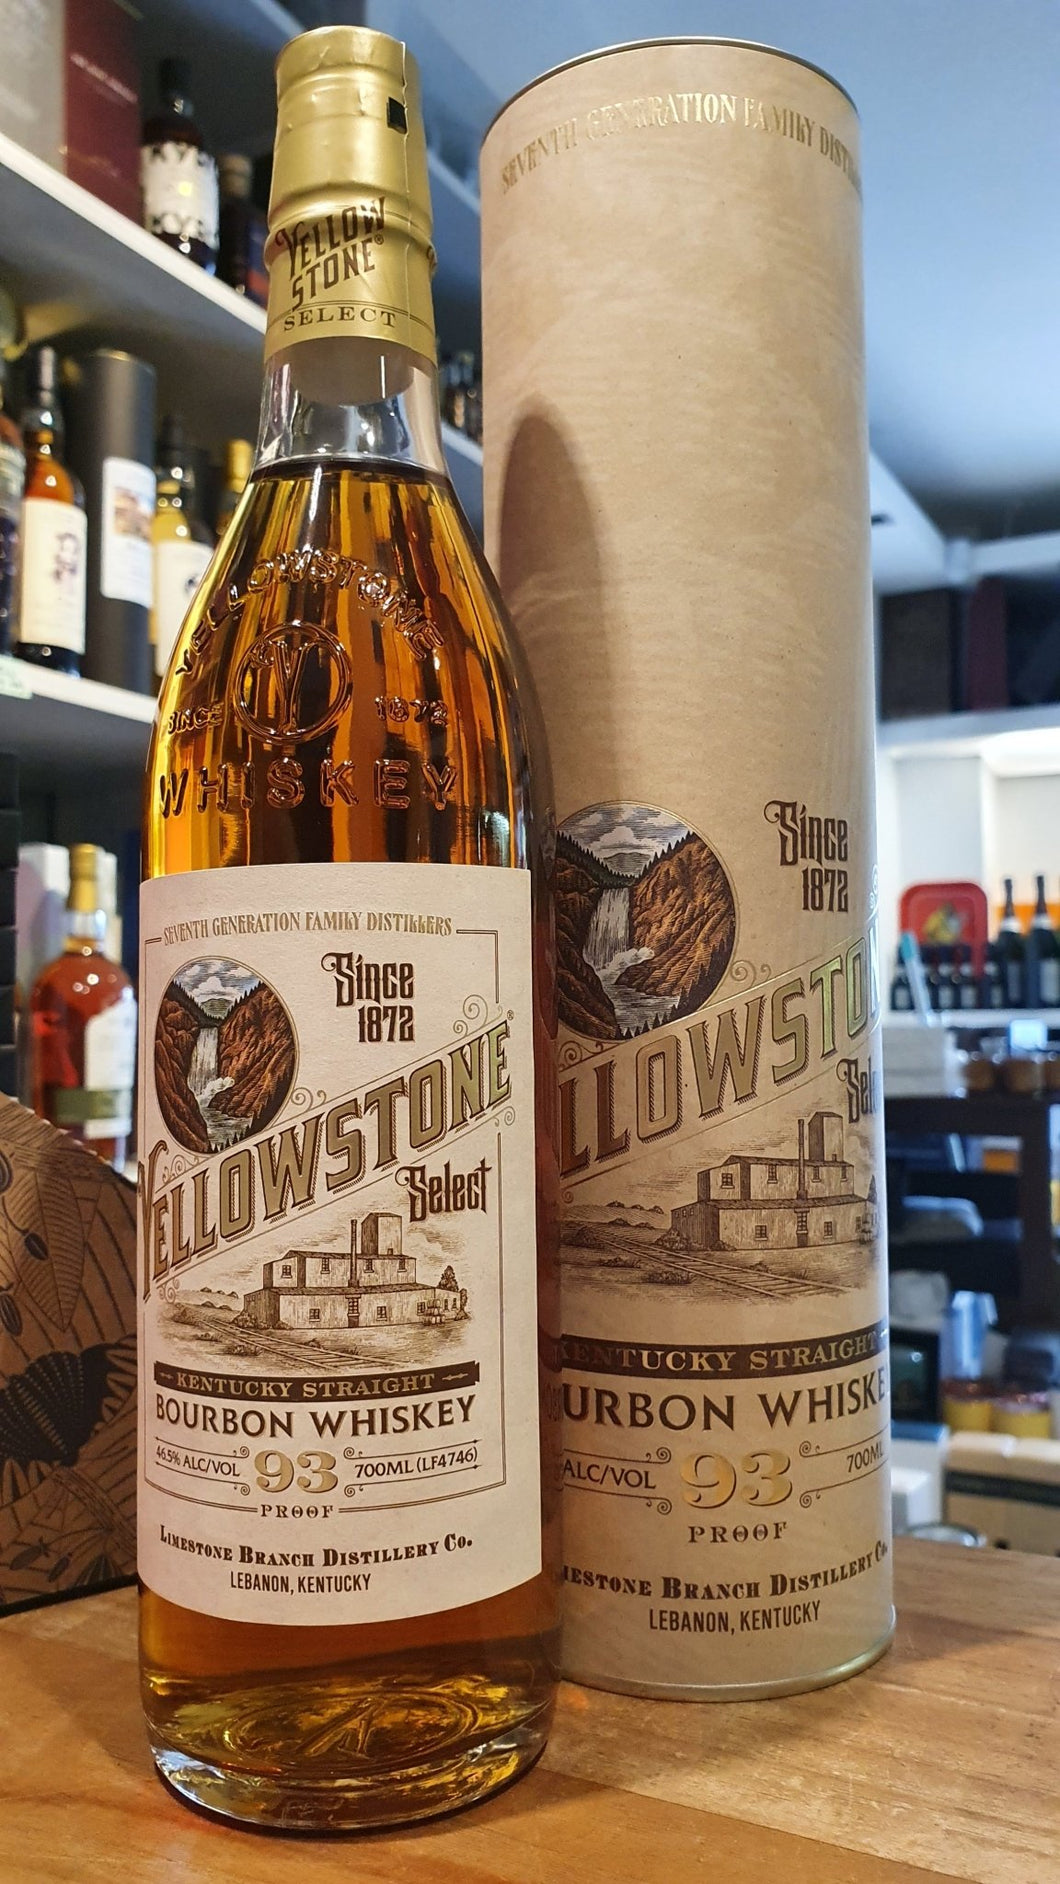 Yellowstone Bourbon Limestone Whiskey 0,7l 46,5% vol.

mit geschenkpackung !

Yellowstone steht für herausragenden Bourbon mit komplexen Aromen und ausbalanciertem Geschmack. Im letzten Jahr hatten wir die Chance, eines der wohlbehüteten Fässer aus den Private Stocks der Limestone Branch Distillery für Deutschland auszuwähle

